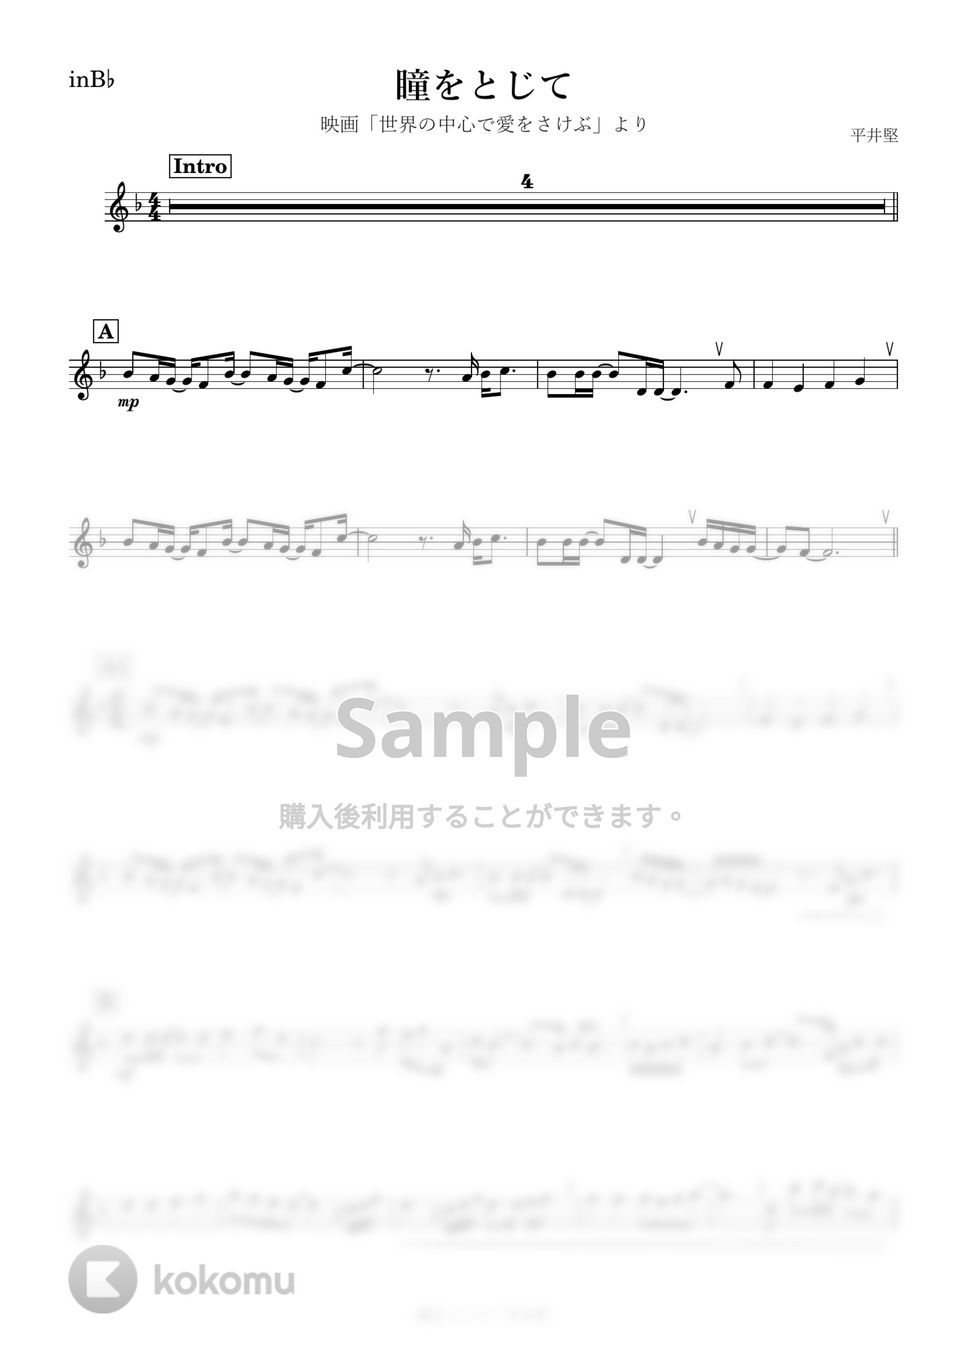 平井堅 - 瞳をとじて (B♭) by kanamusic